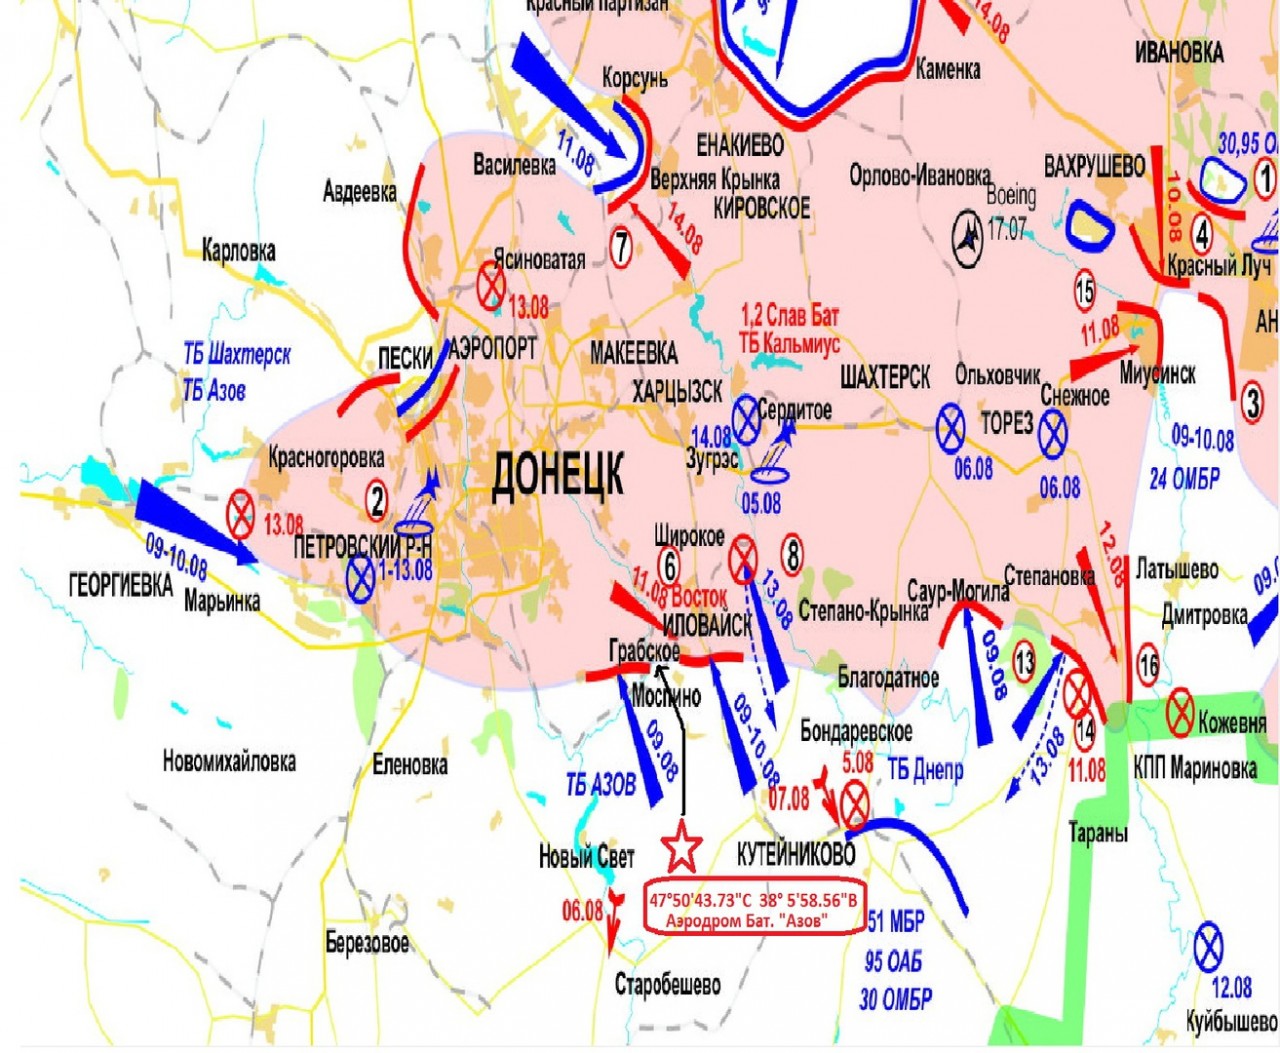 Карта боевых действий на июль и август 2014 года.